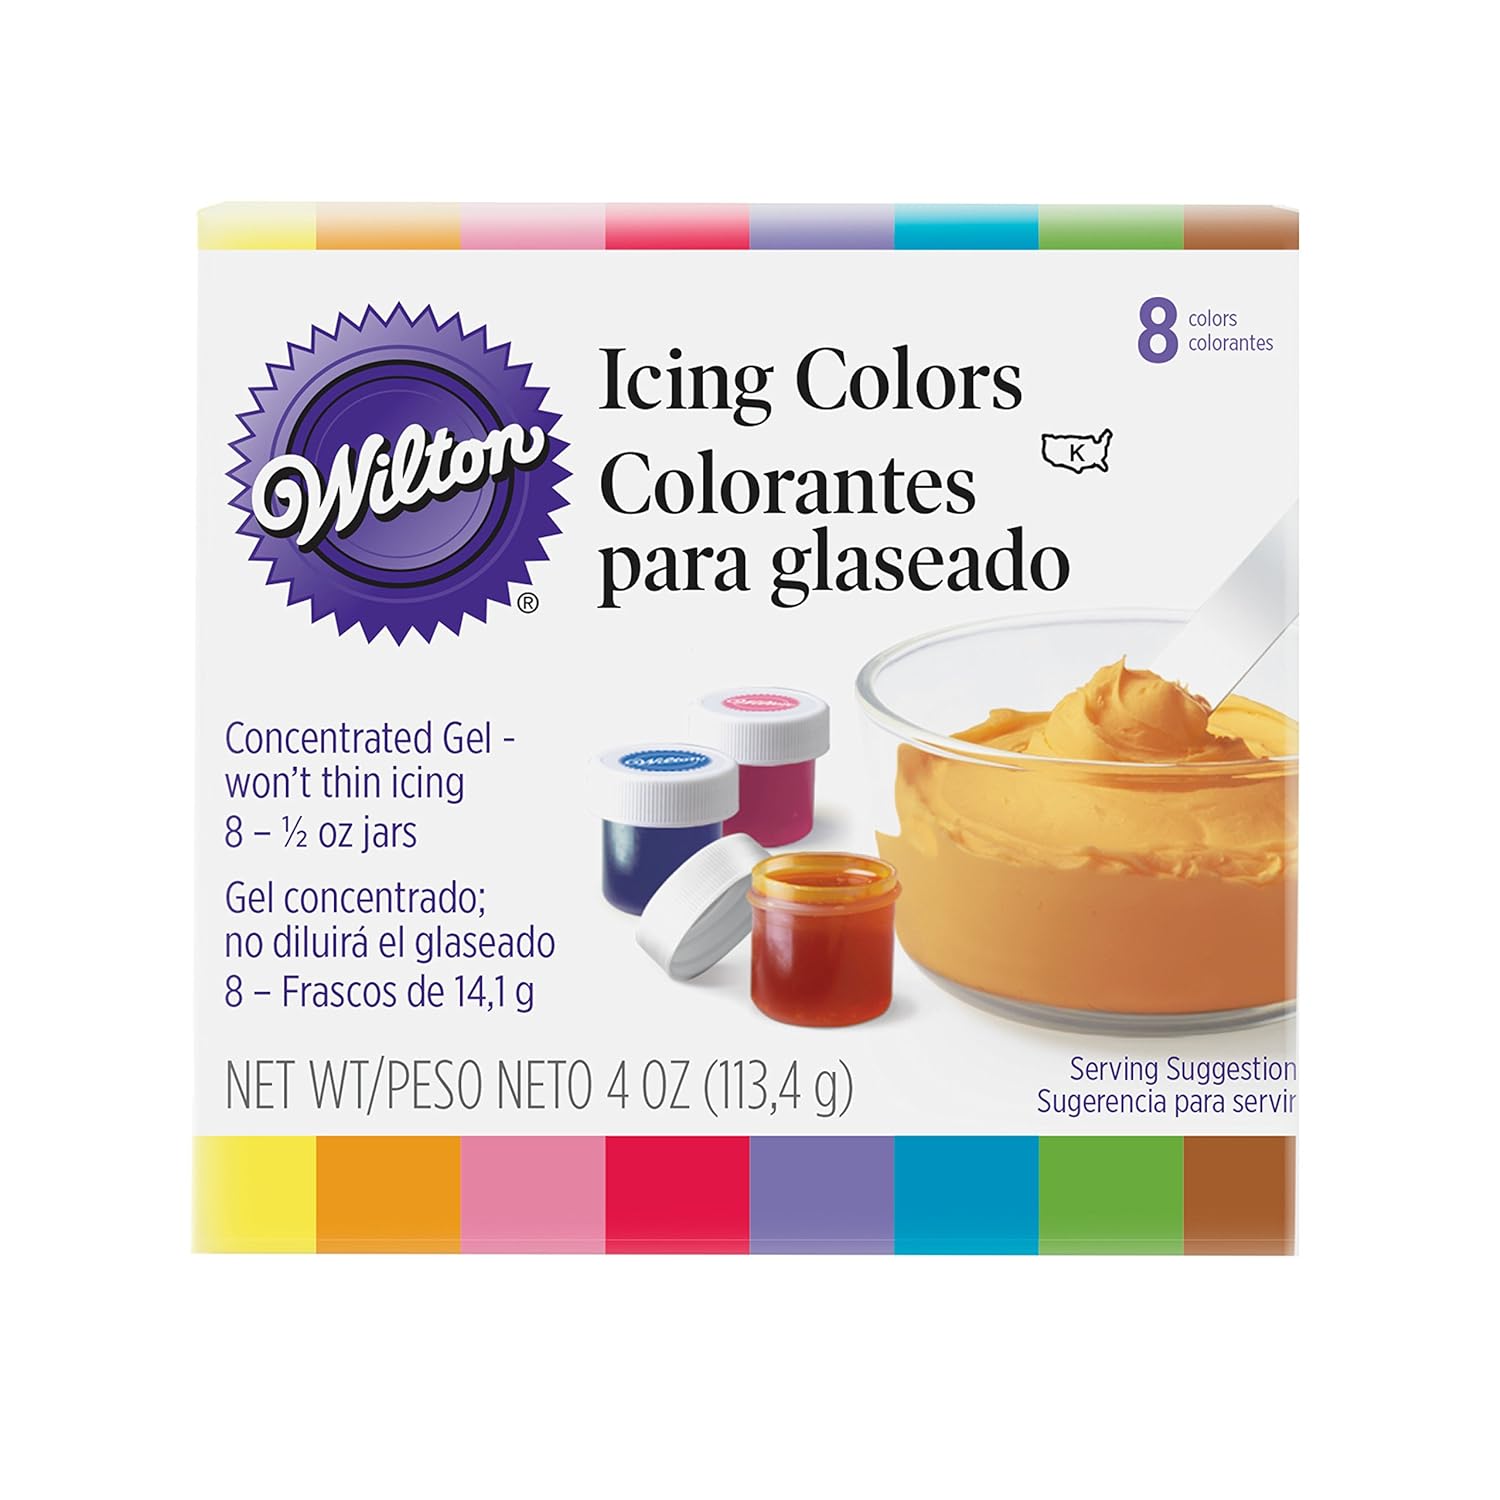 Wilton Colores de glaseado (8 unidades) y marcadores de tinta comestible Black Food Writer (2 unidades)